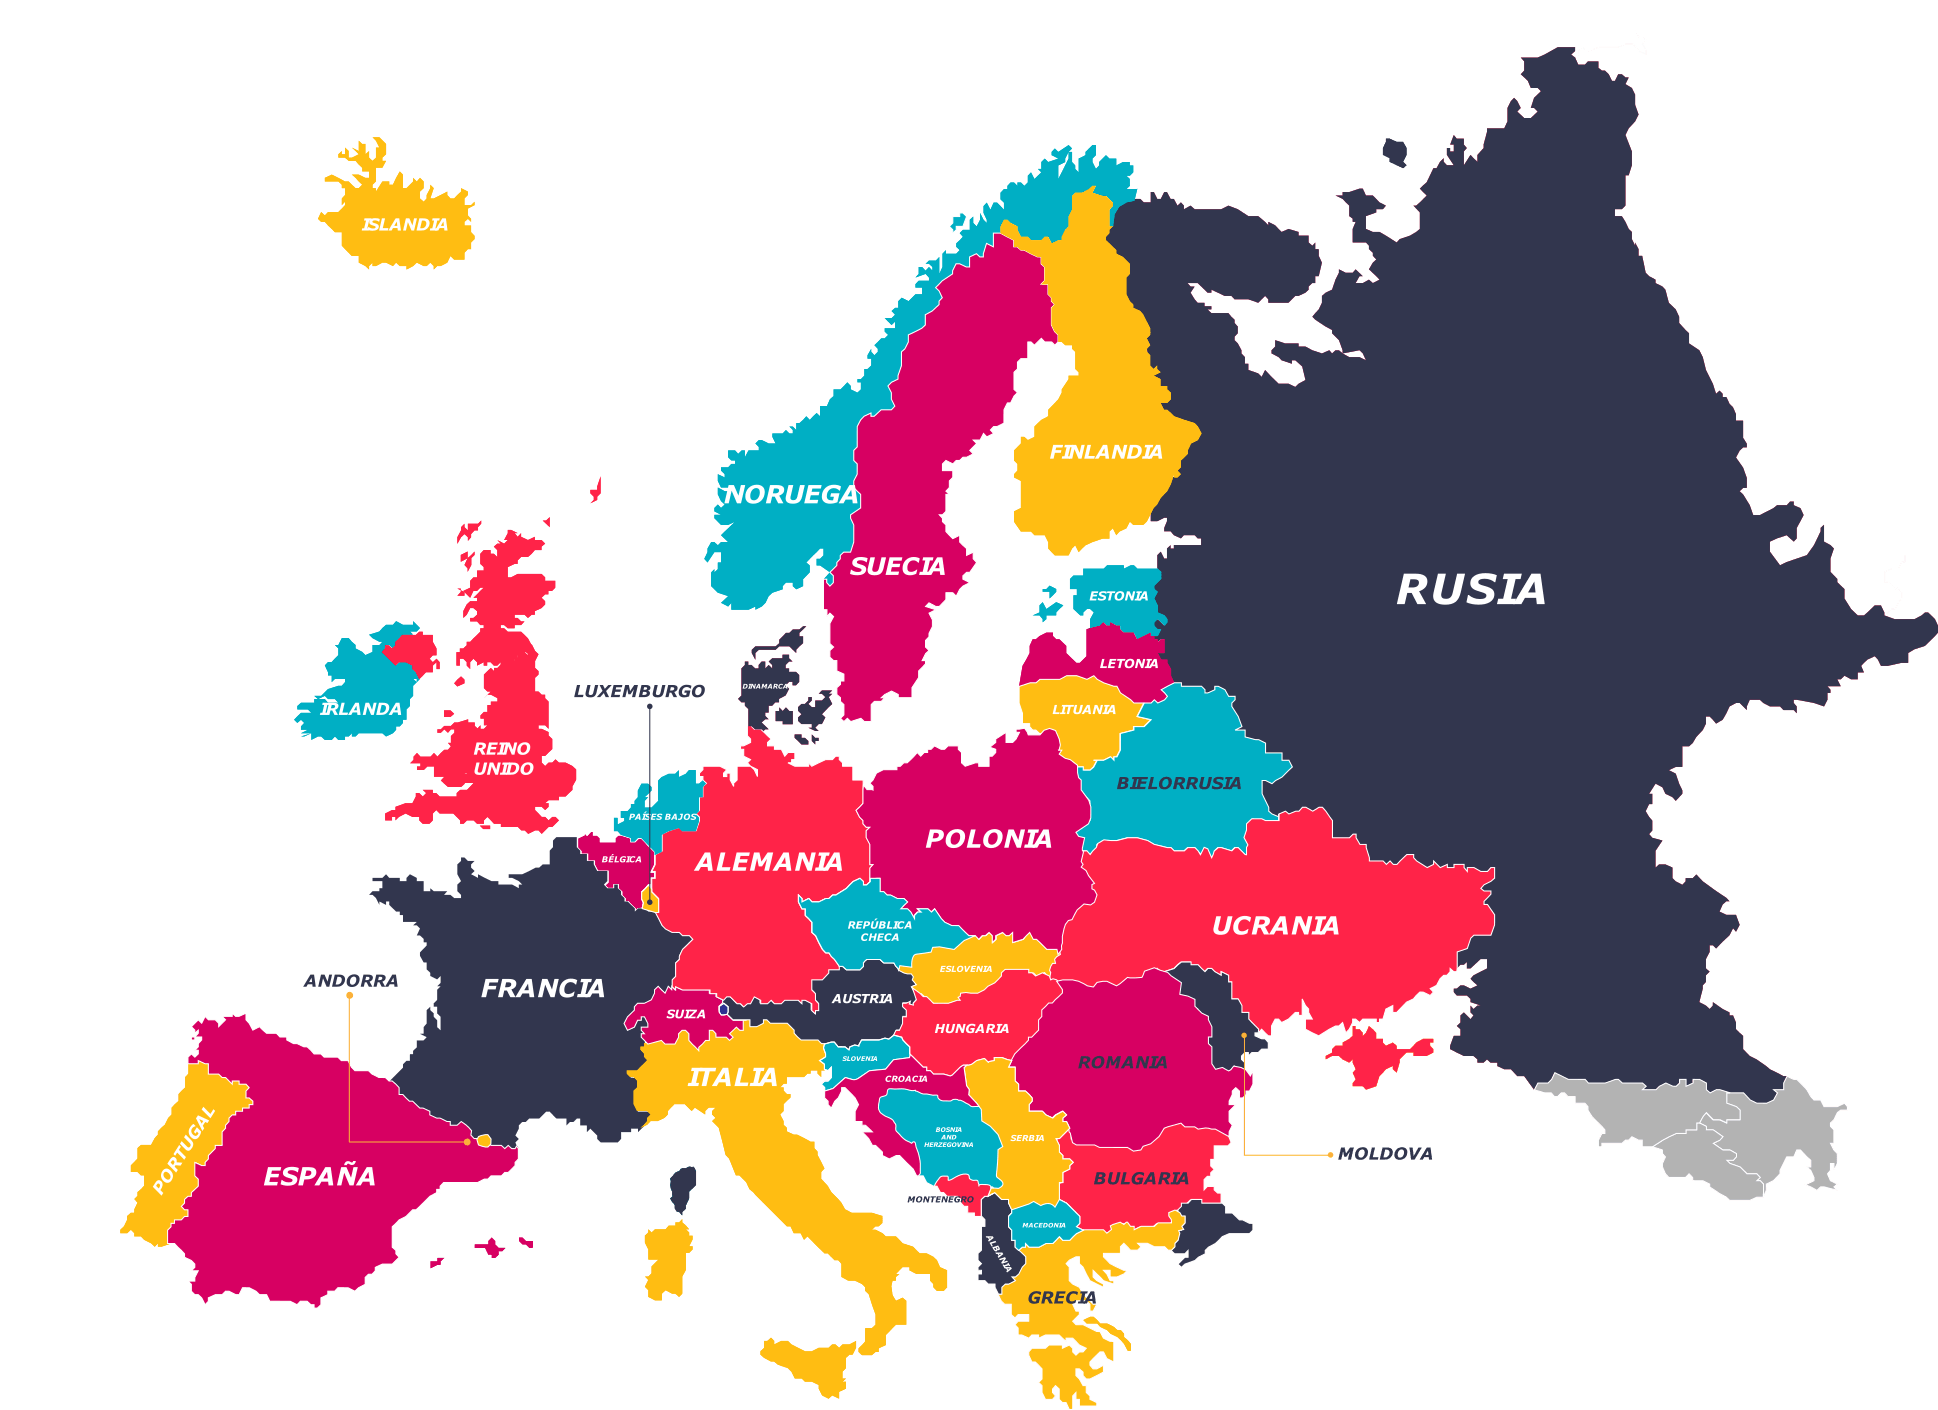 Mapa de Europa con nombres y división política en PDF gratis